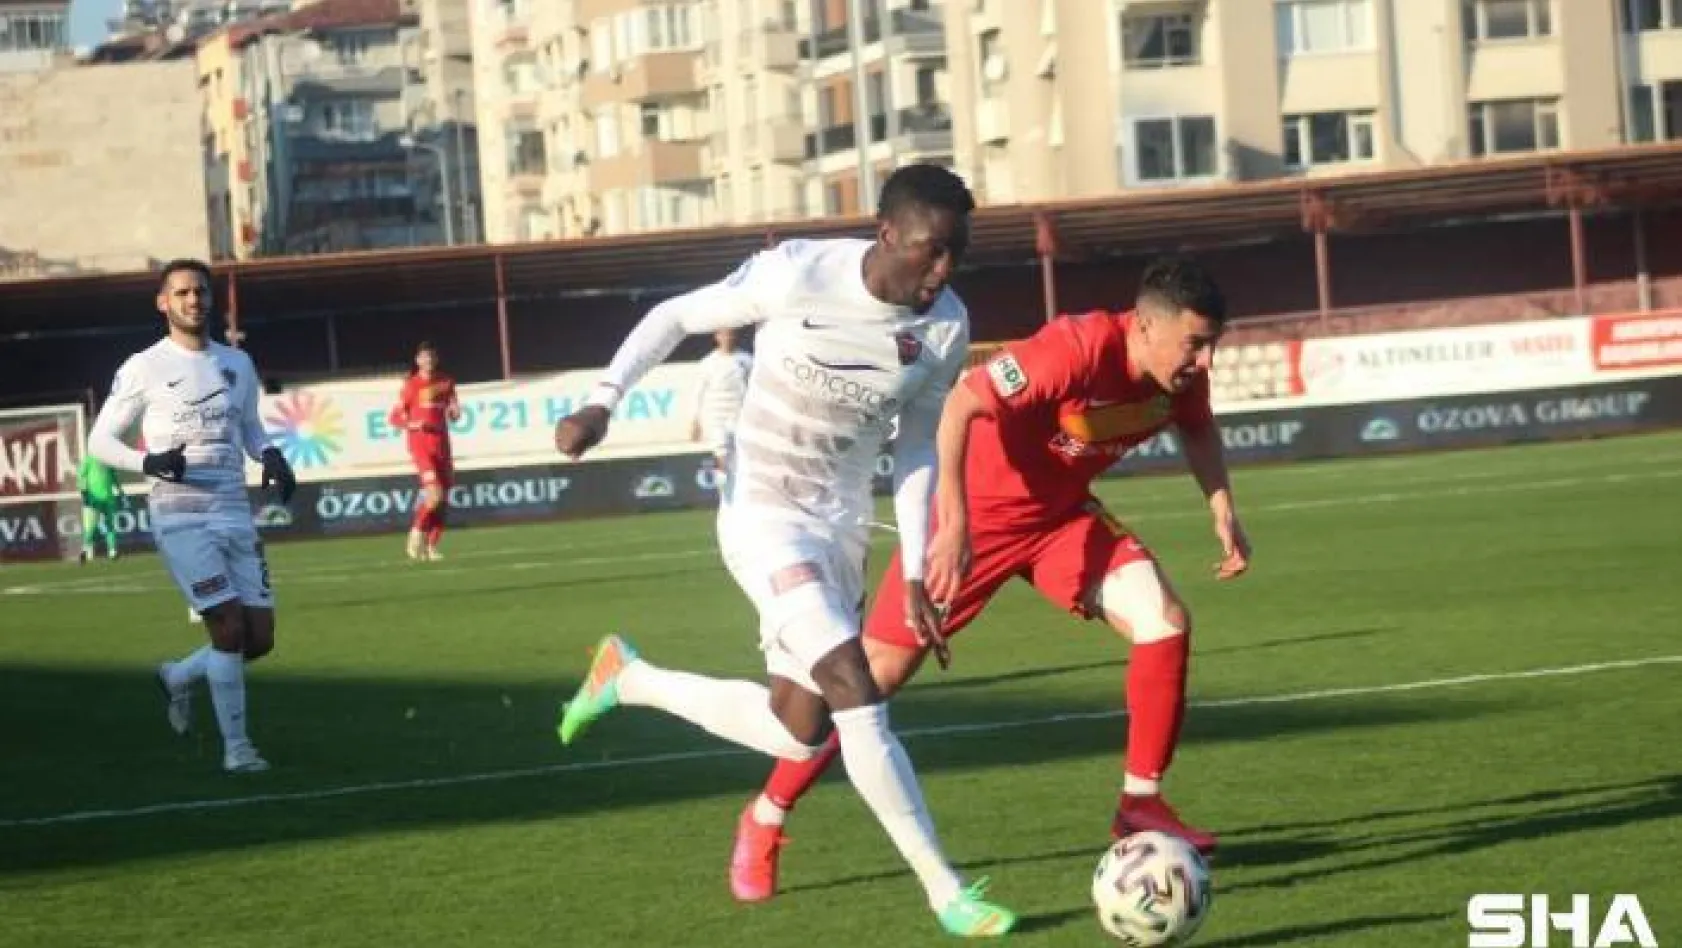 Süper Lig: Hatayspor: 0 - Yeni Malatyaspor: 0 (Maç devam ediyor)